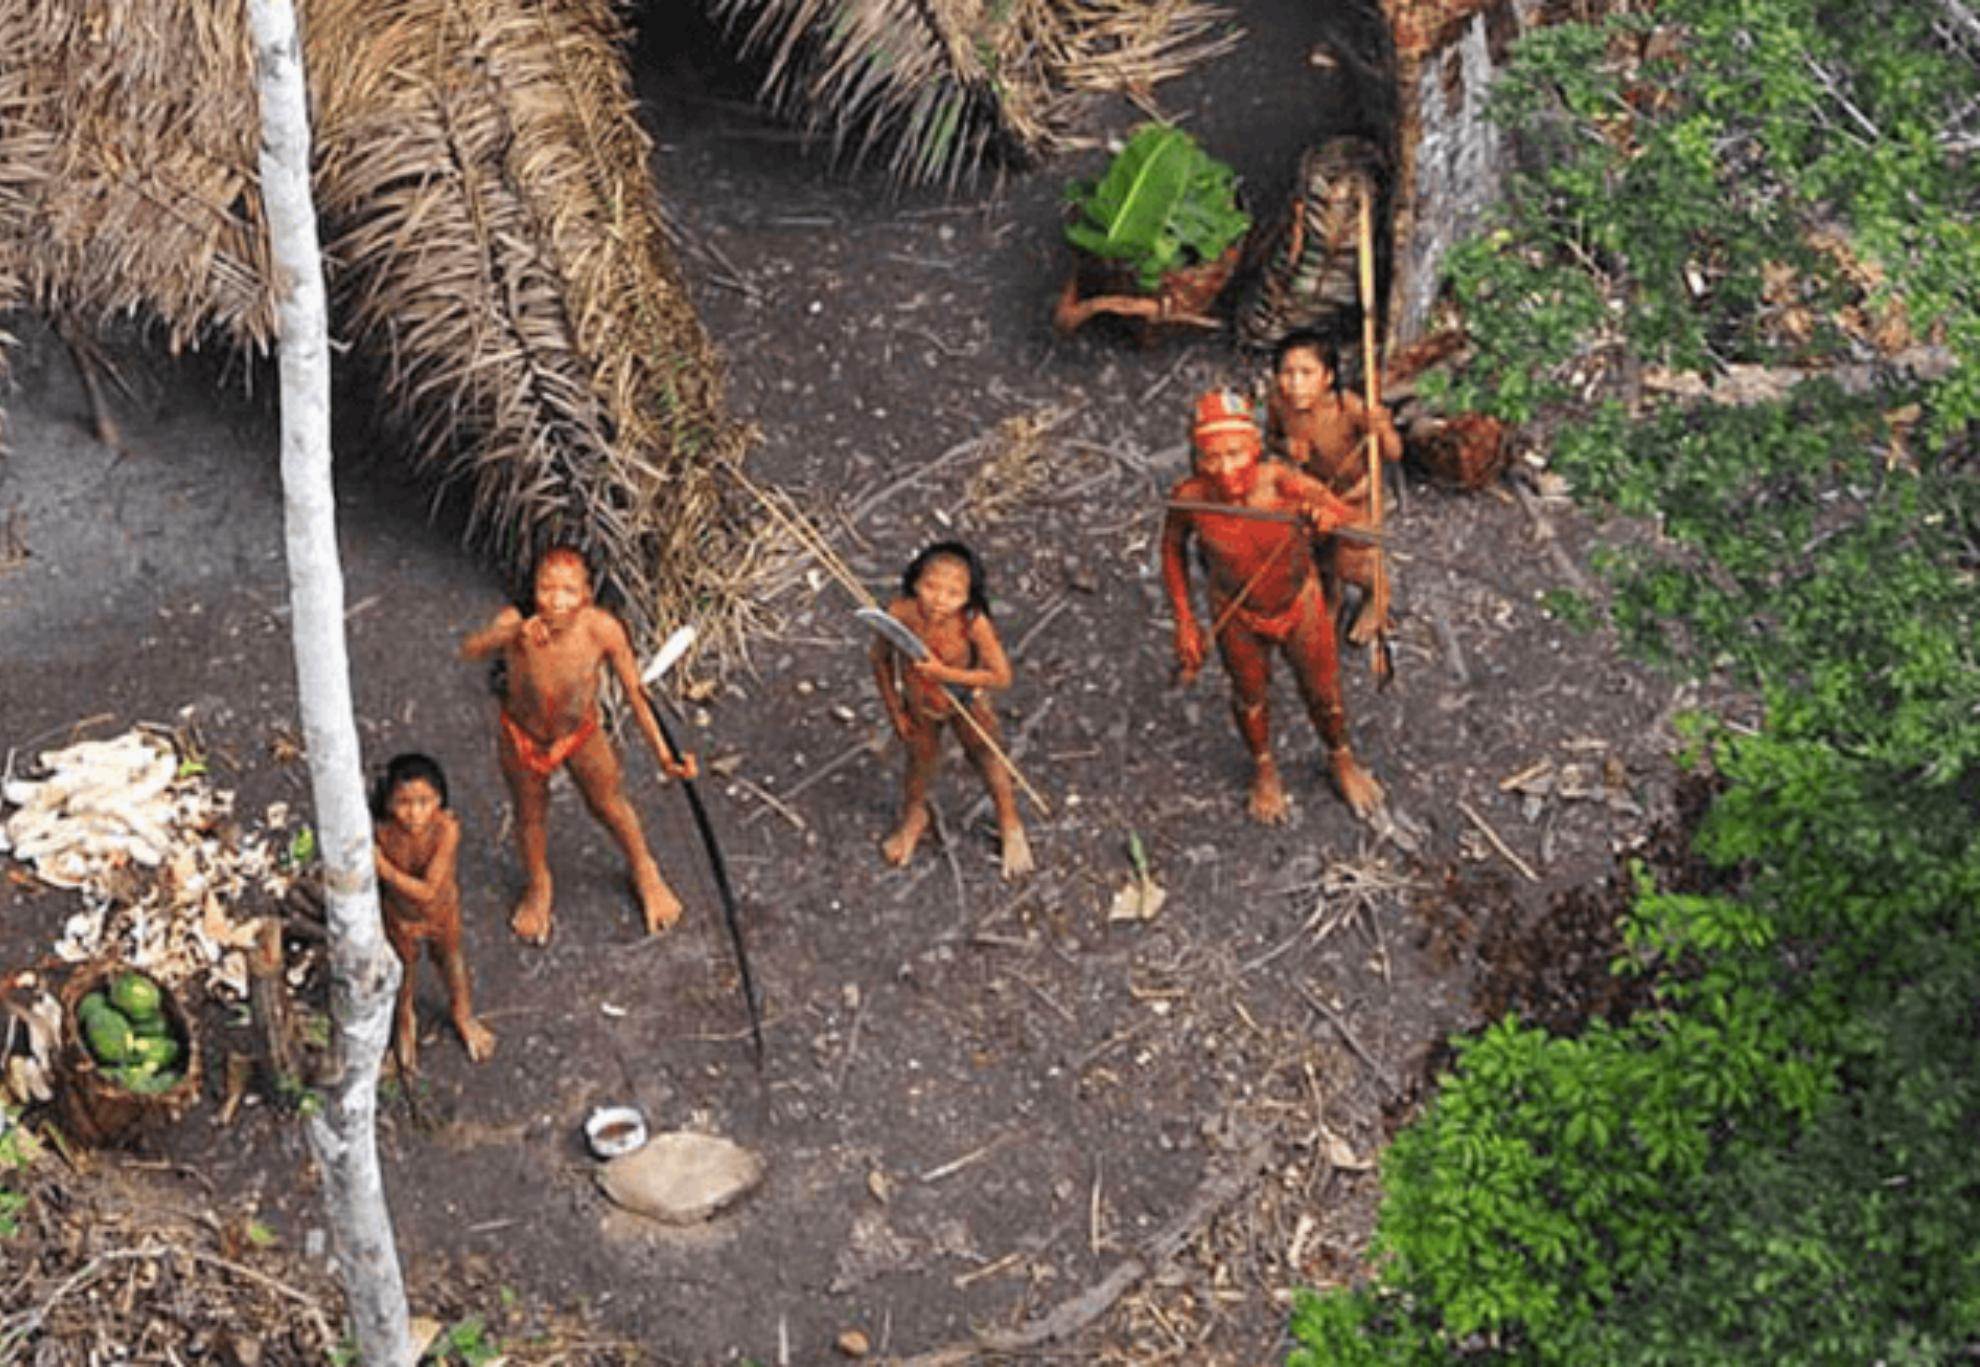 Βόρειο Σέντινελ το νησί του θανάτου: Ένας επίγειος παράδεισος ανέπαφος από τον πολιτισμό που κατοικείται από την πιο επικίνδυνη  πρωτόγονη φυλή κανίβαλων